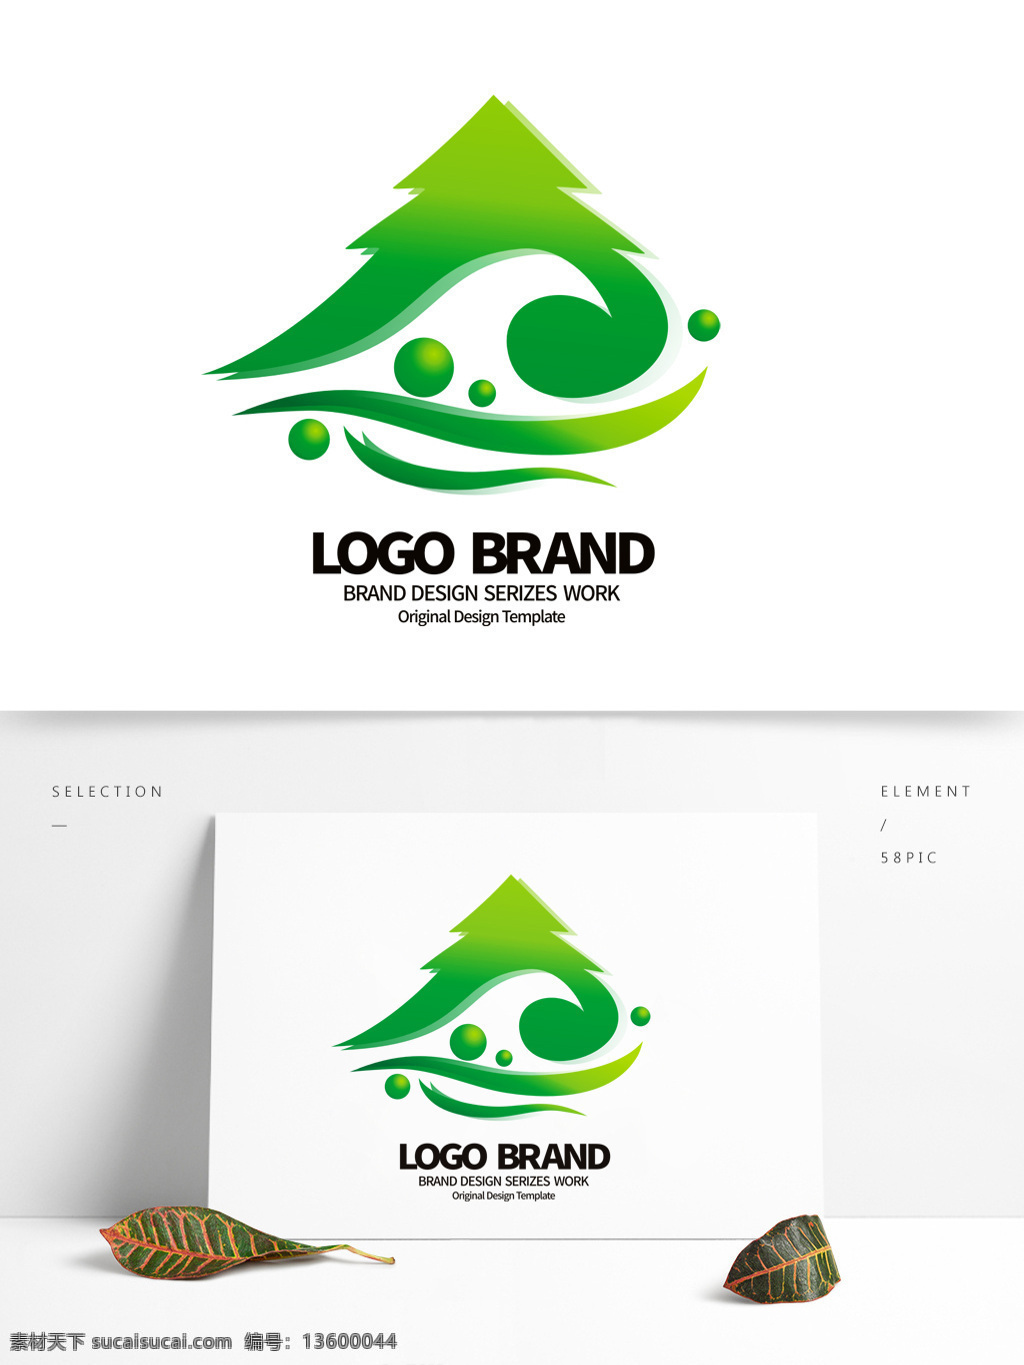 矢量 绿色 园林 a 字母 公司 logo 标志设计 淘宝店铺标志 标志 公司标志设计 企业 会徽标志设计 企业标志设计